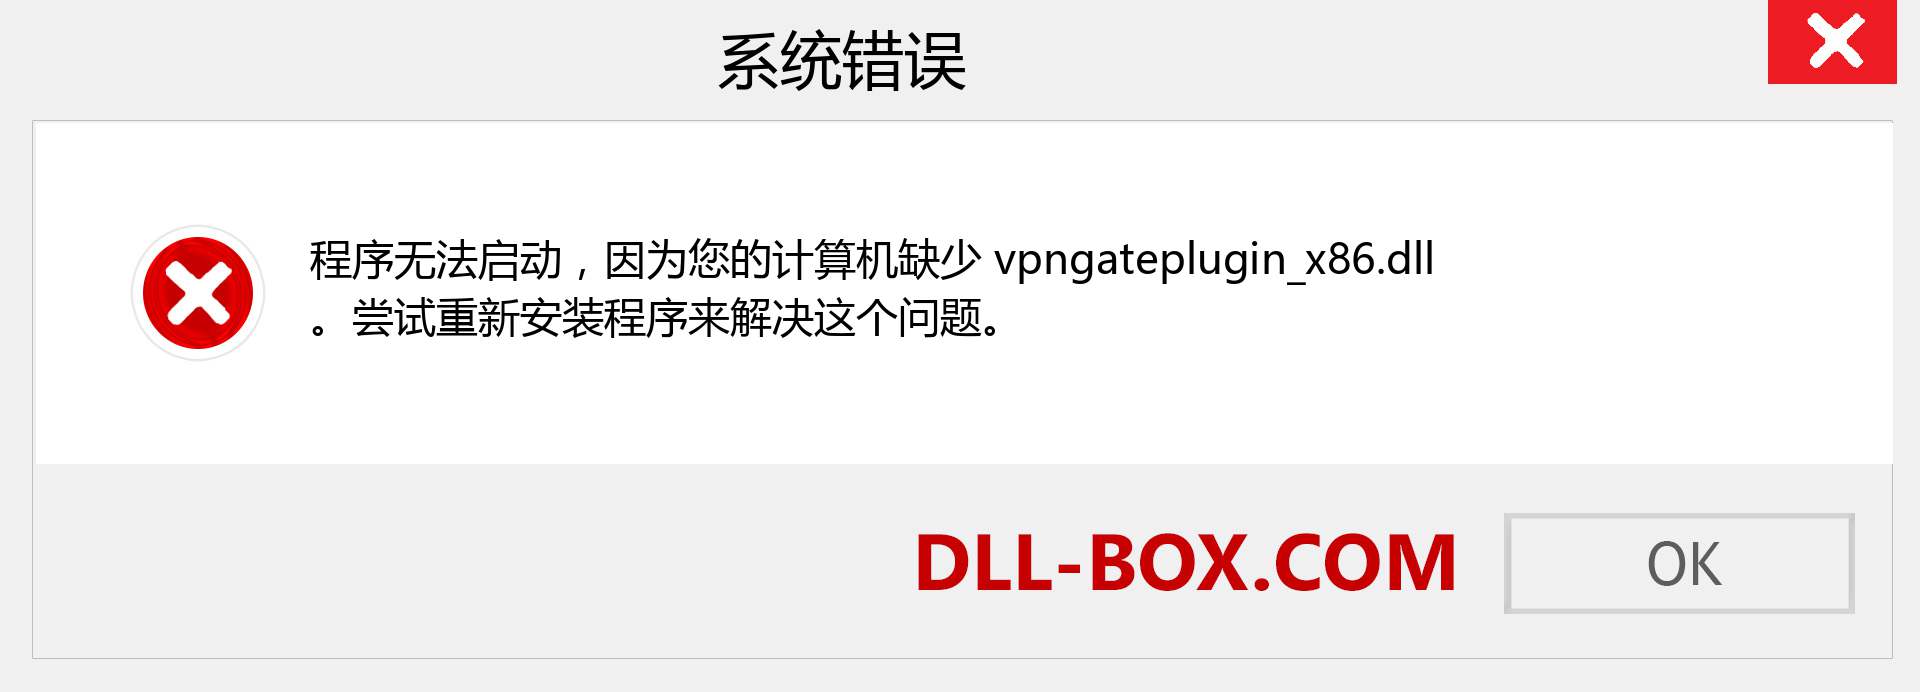 vpngateplugin_x86.dll 文件丢失？。 适用于 Windows 7、8、10 的下载 - 修复 Windows、照片、图像上的 vpngateplugin_x86 dll 丢失错误